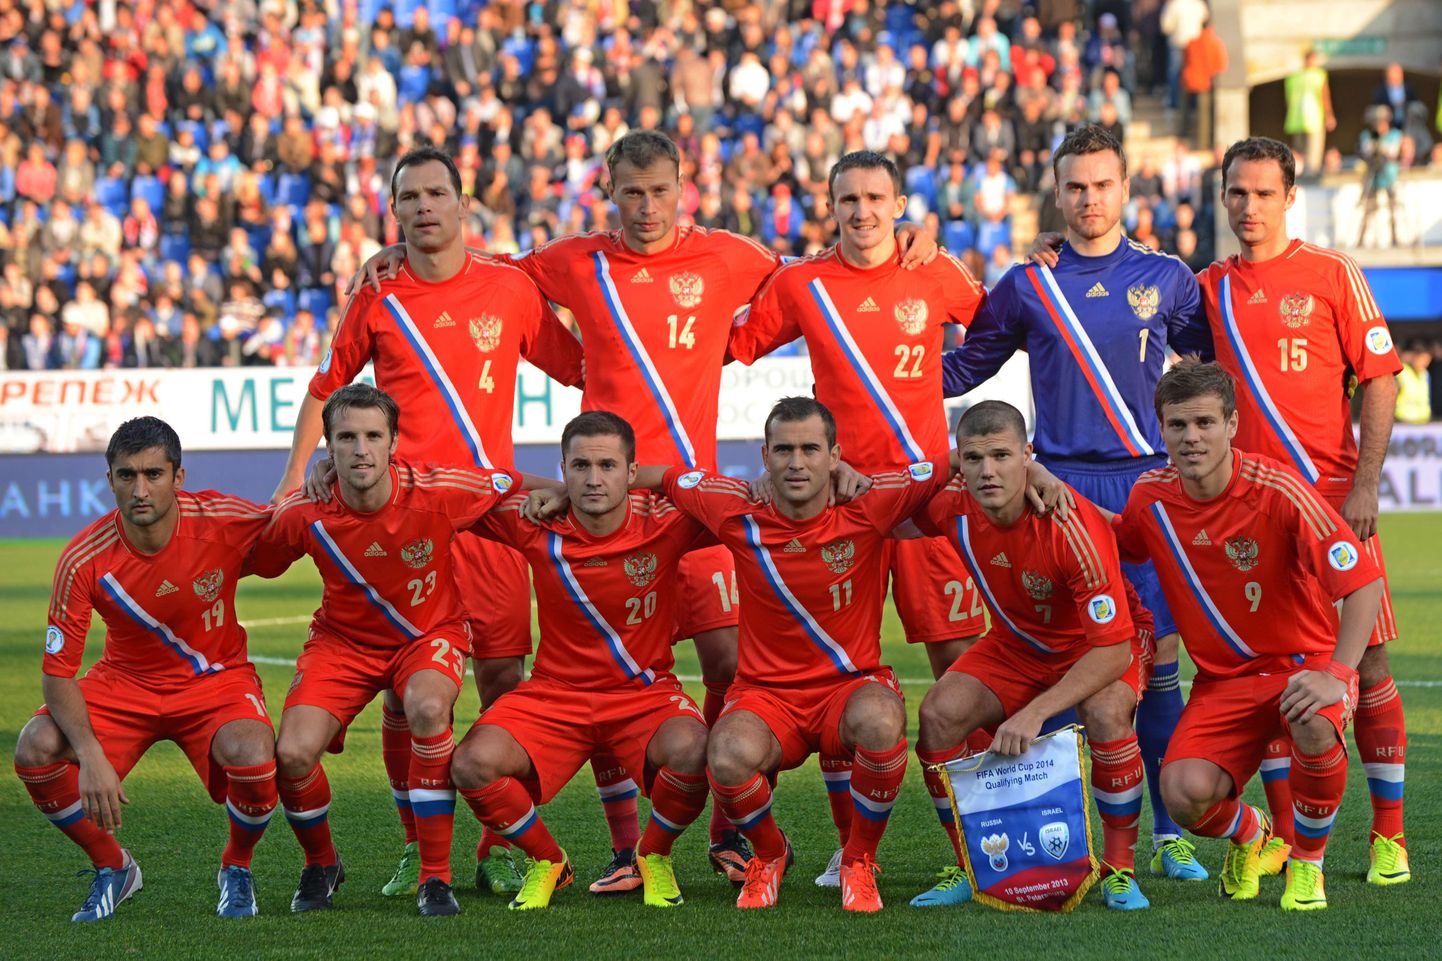 Venemaa jalgpallikoondis 2013. aastal enne MM-valikmängu Iisraeliga.